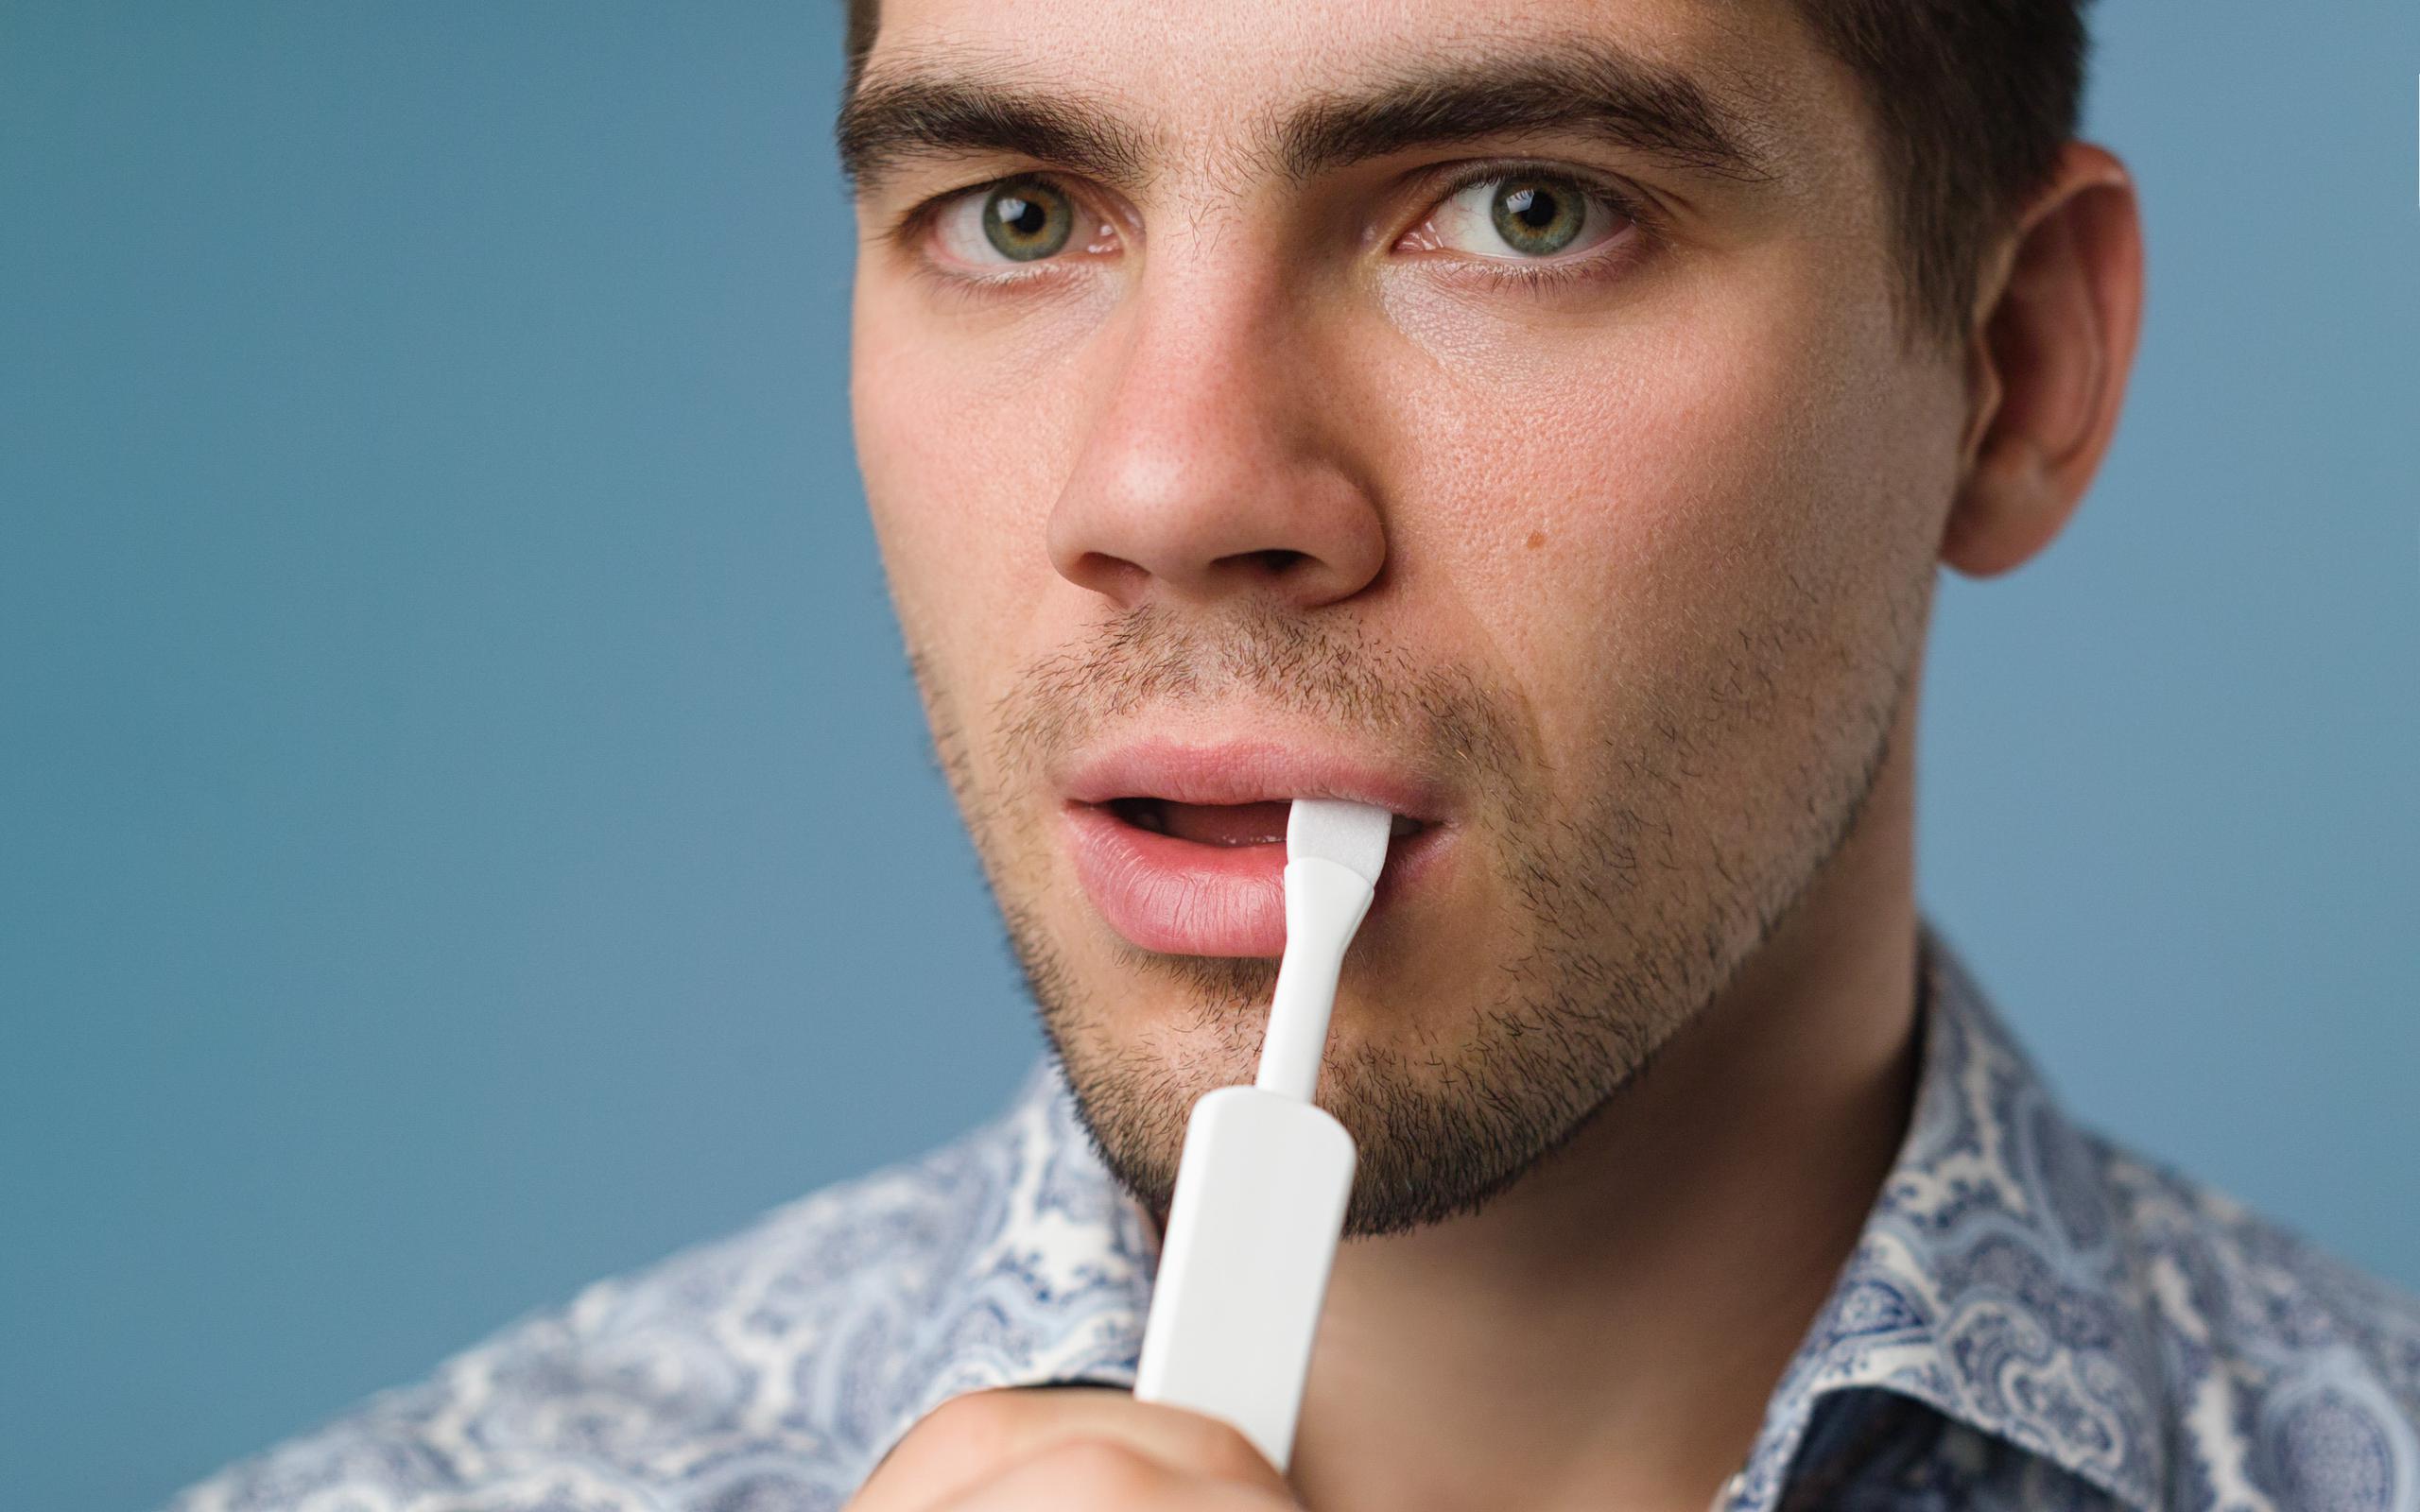 El dispositivo para realizar la prueba rápida del VIH consiste en una paleta absorbente que se frota sobre la mucosa de la boca.